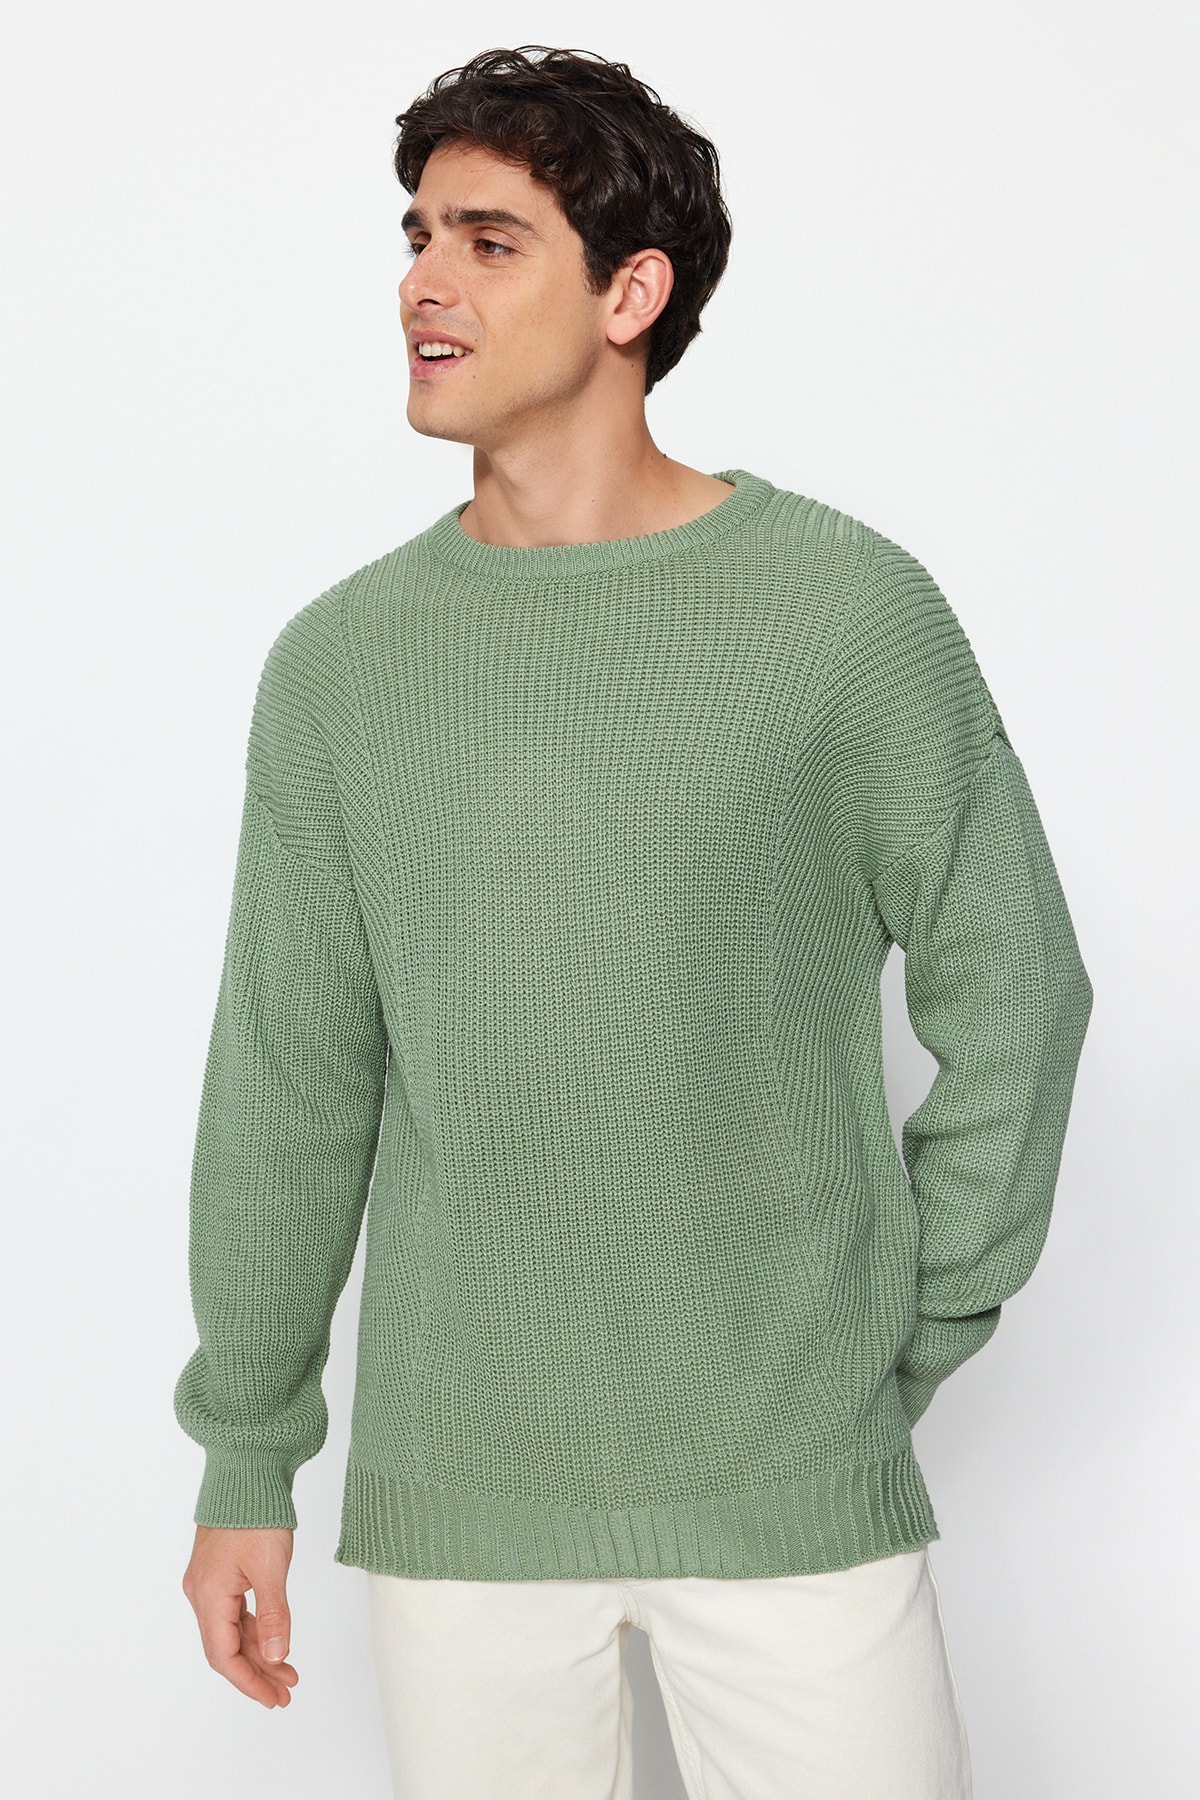 Trendyol Mint Men's Oversize Fit Wide Fit Crew Neck Slit Knitwear Sweater